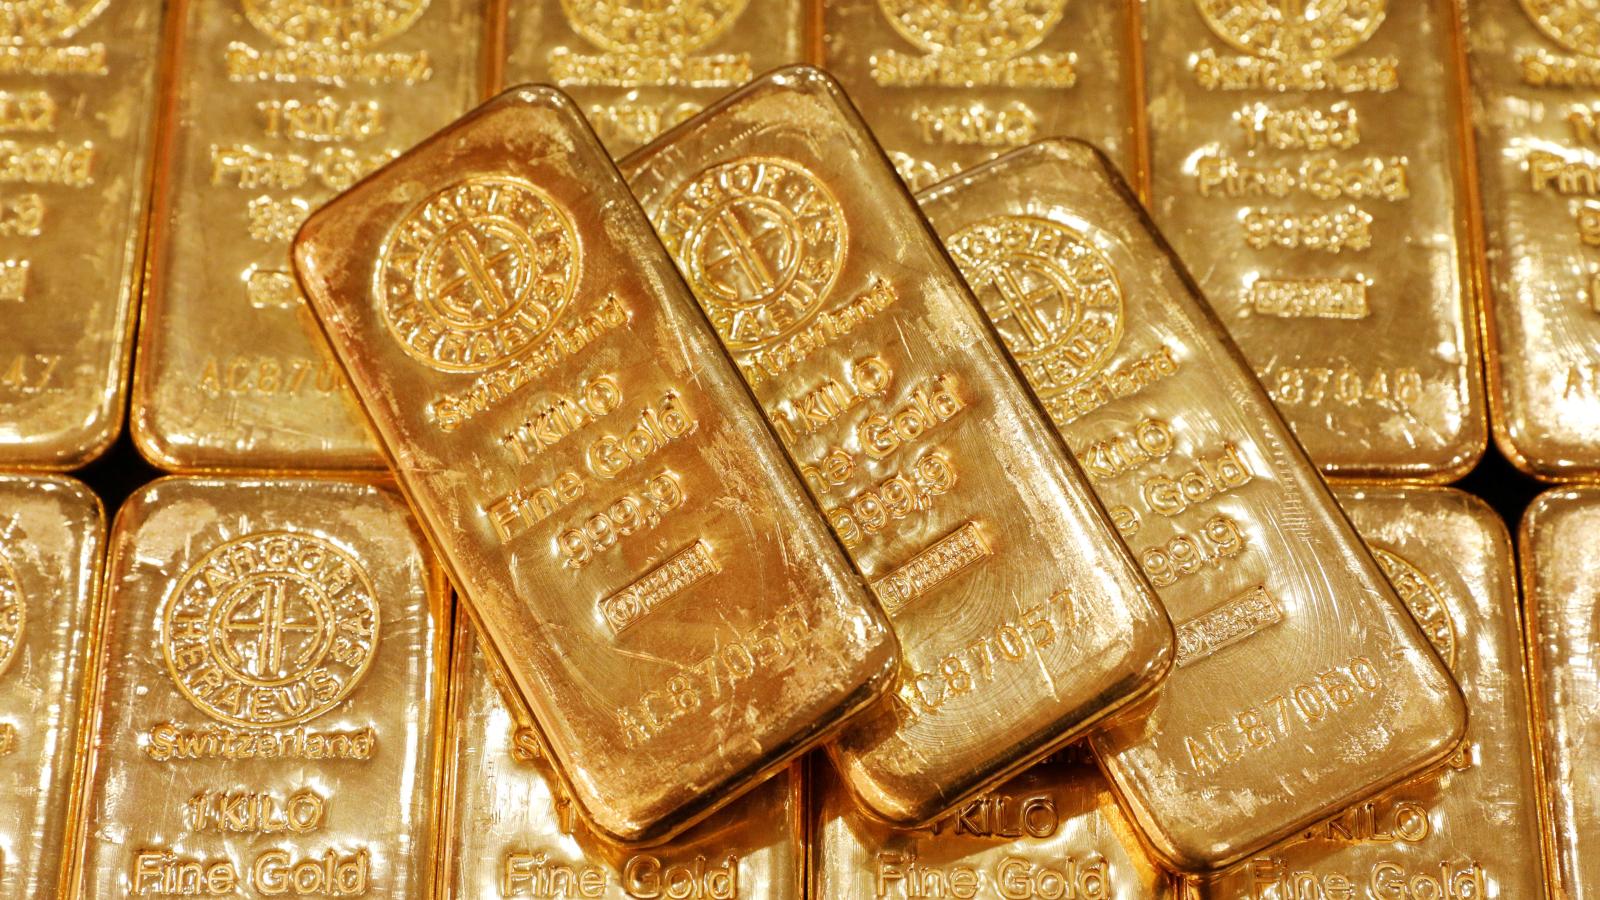 Mỹ đã đóng băng tài sản chính phủ Afghanistan gửi ở Mỹ, bao gồm 22 tấn vàng.